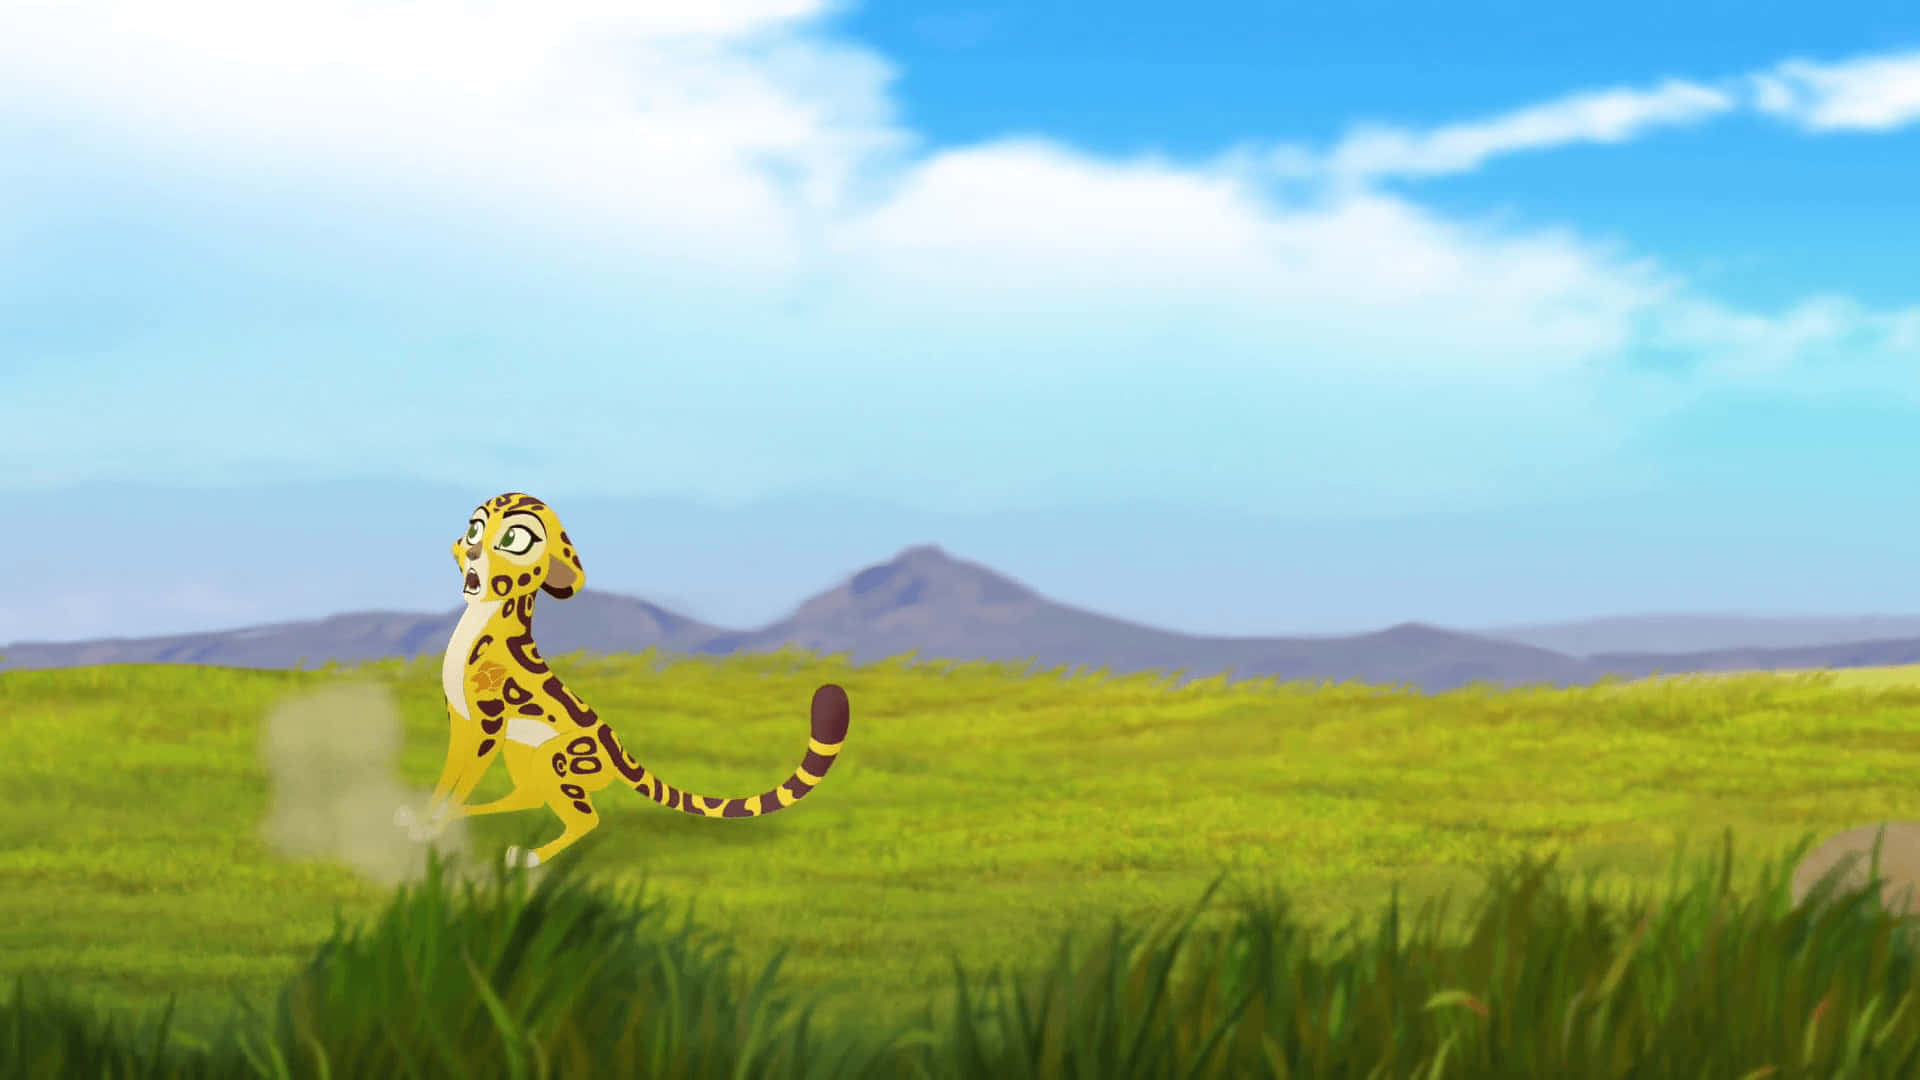 A Cartoon Cheetah Is Running In The Grass Wallpaper